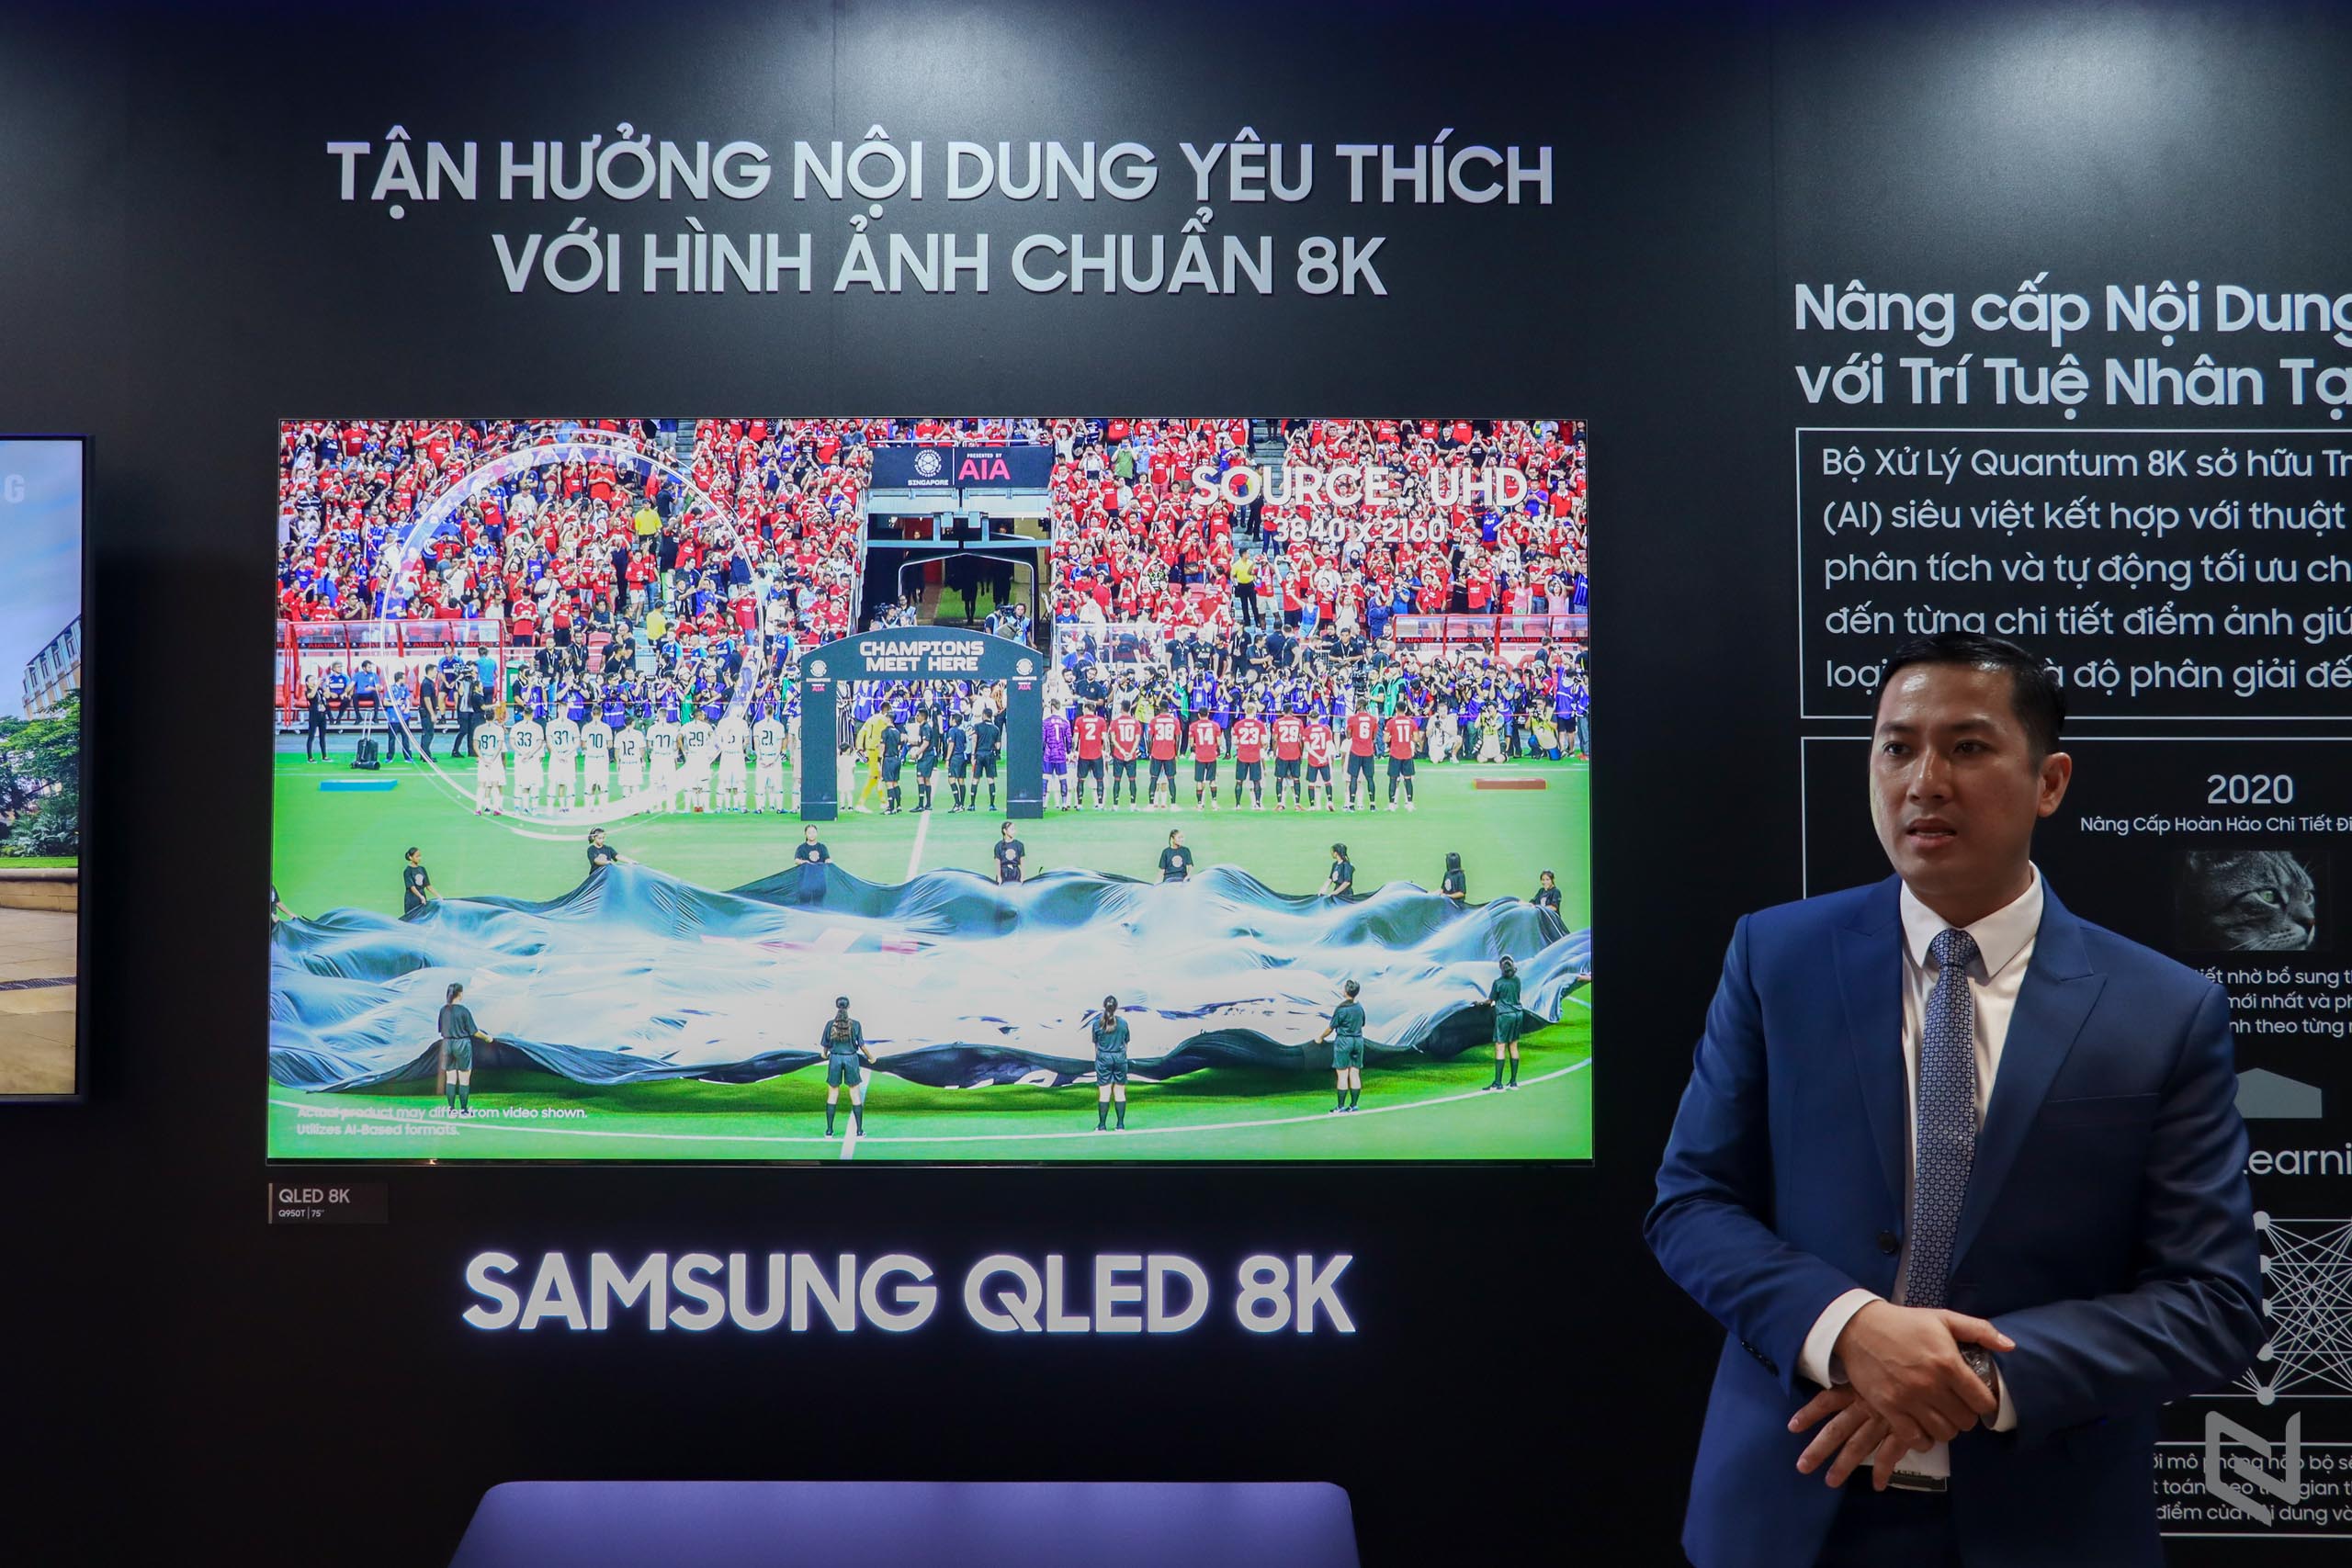 14 năm dẫn đầu thị phần TV toàn cầu và sự bảo chứng về chất lượng hình ảnh, an toàn với người dùng của TV Samsung